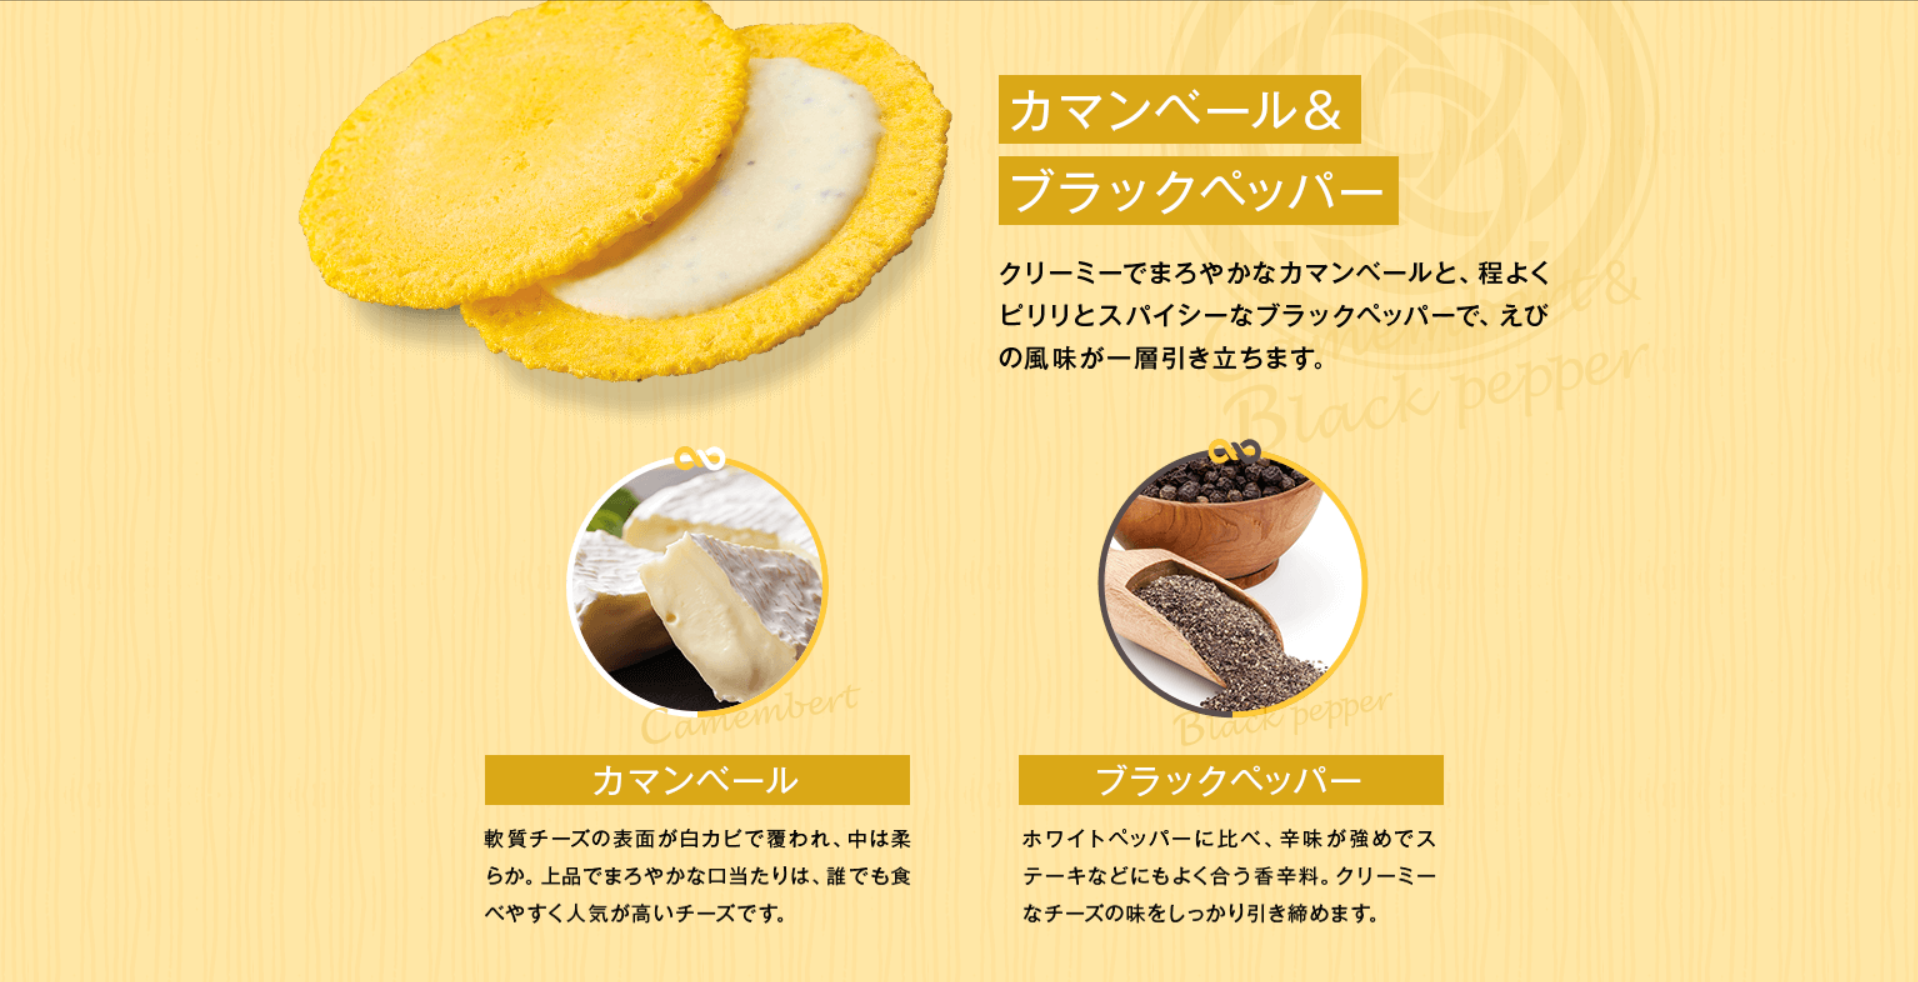 クアトロえびチーズ-えびとチーズの専門店SHIMAHIDE-1